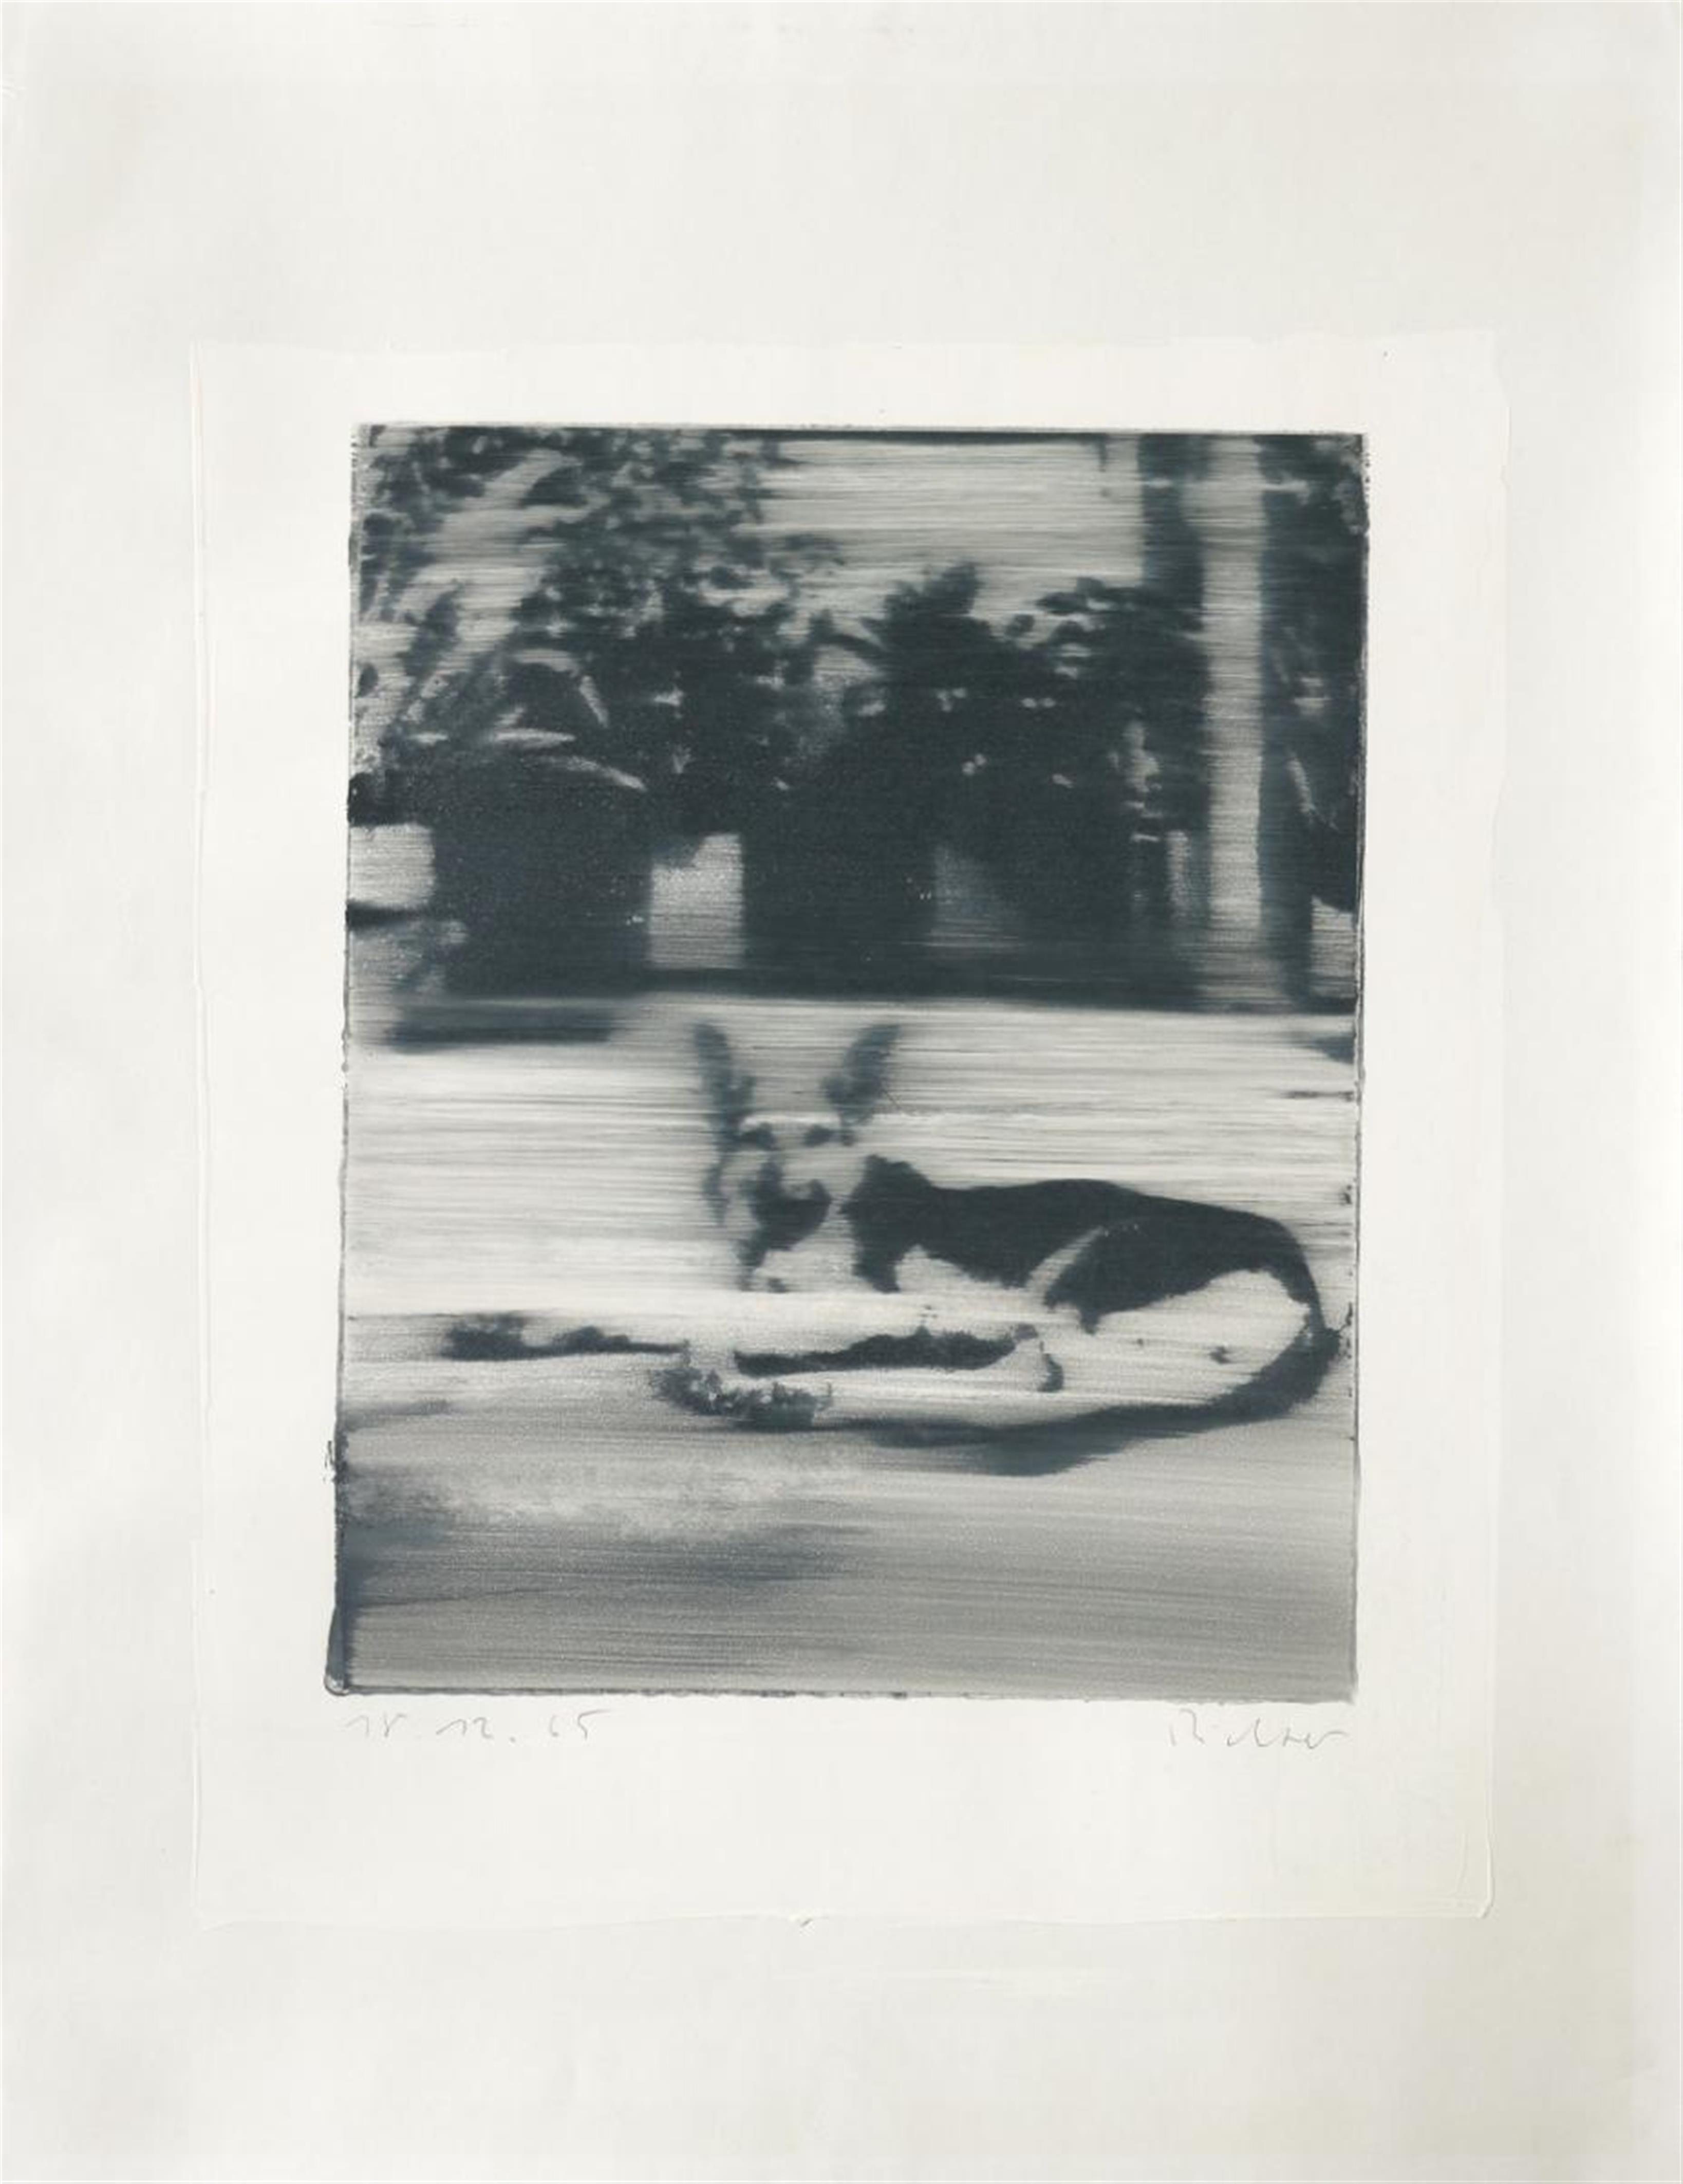 Gerhard Richter - Hund (dog) - image-1